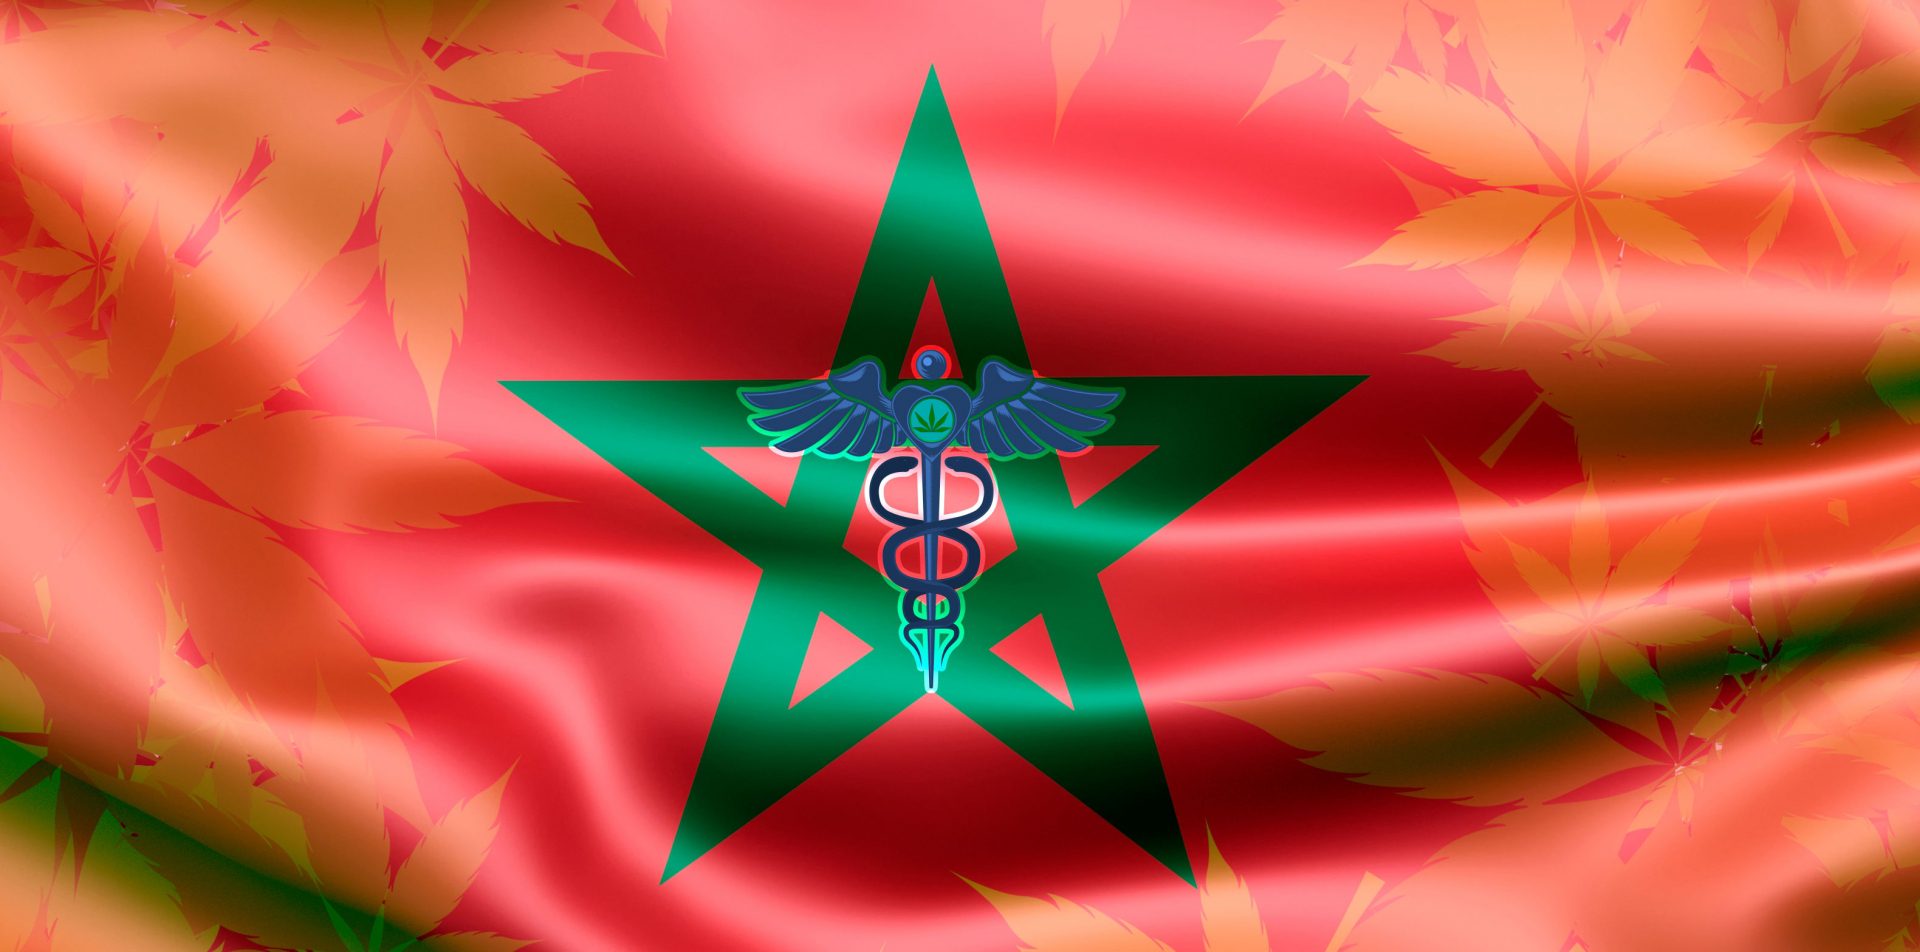 Morocco legalizes medicinal Cannabis